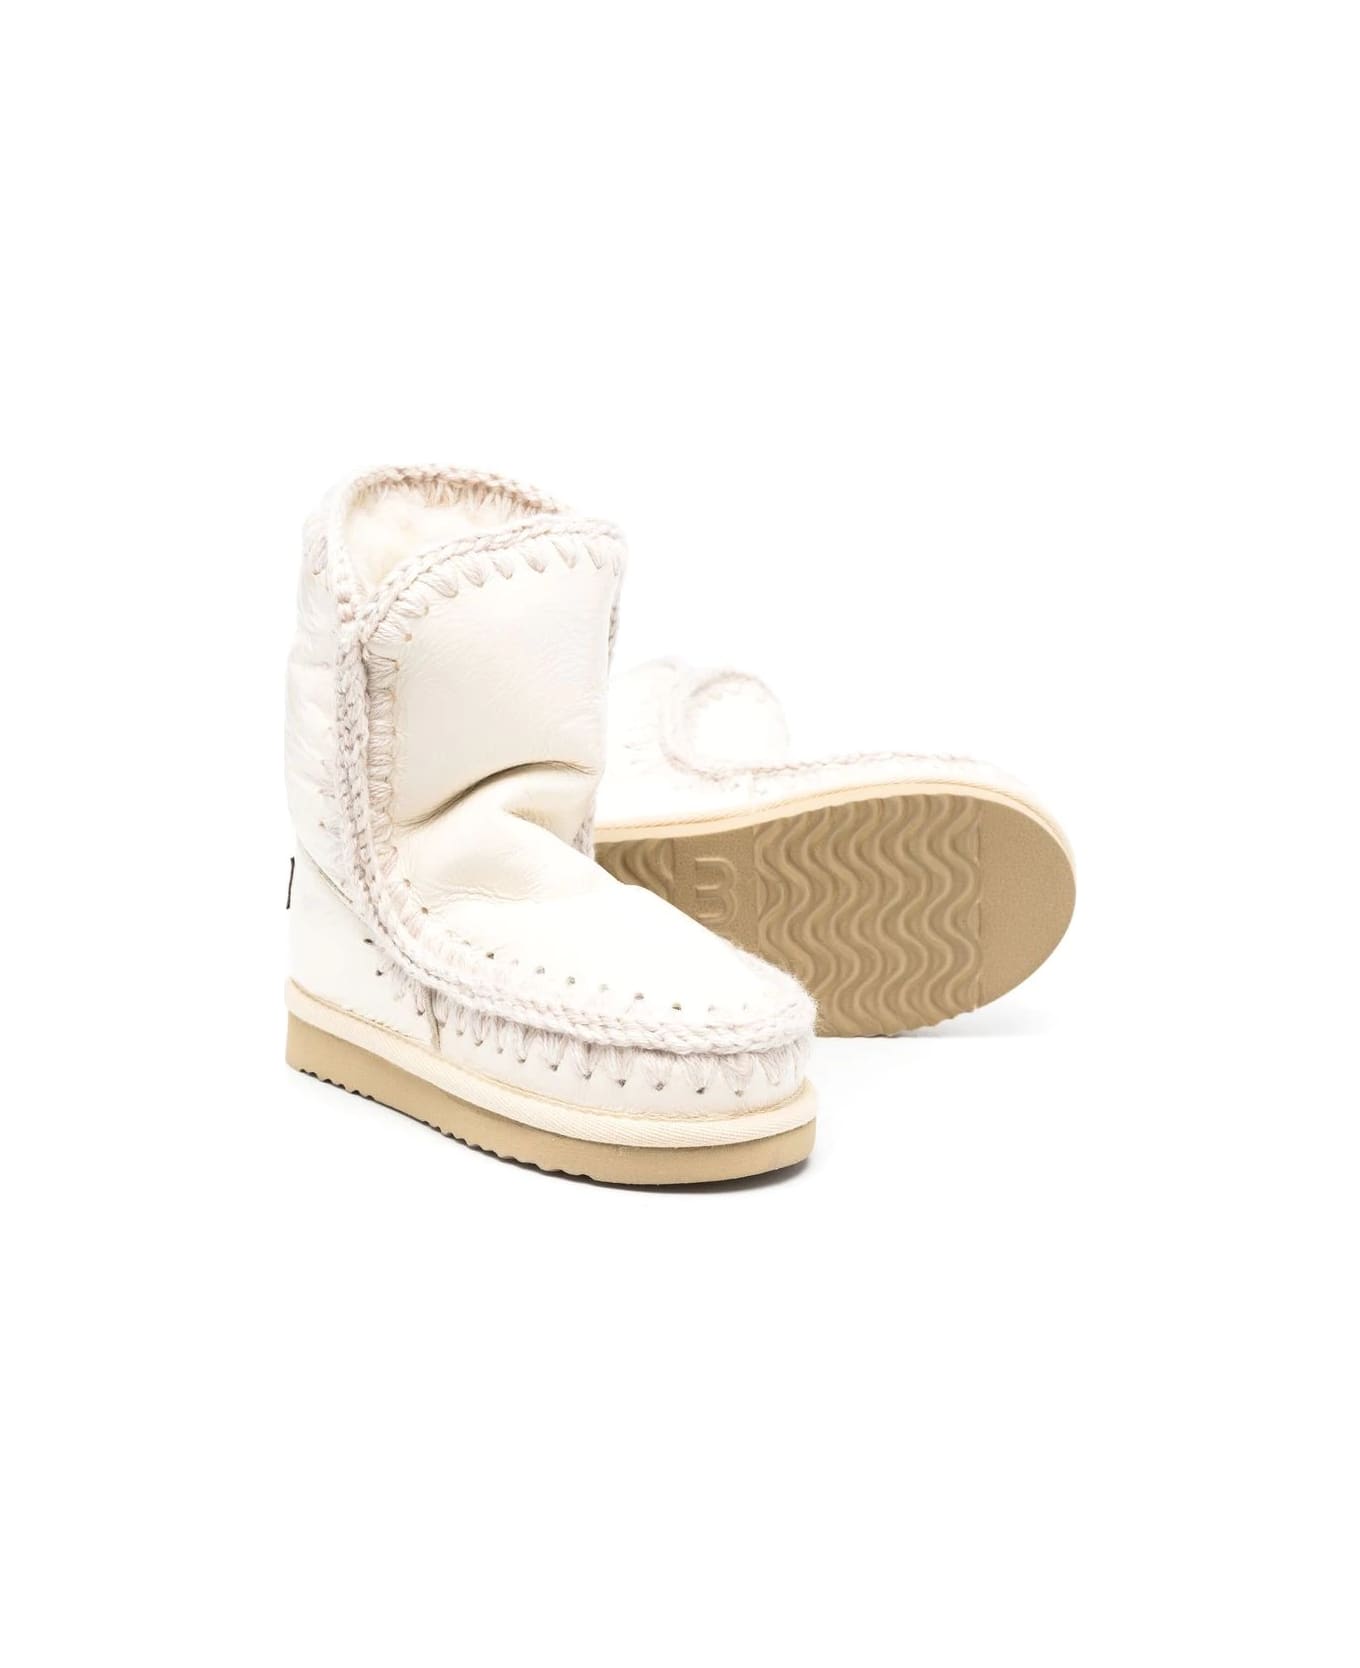 Mou Eskimo Boots White - White